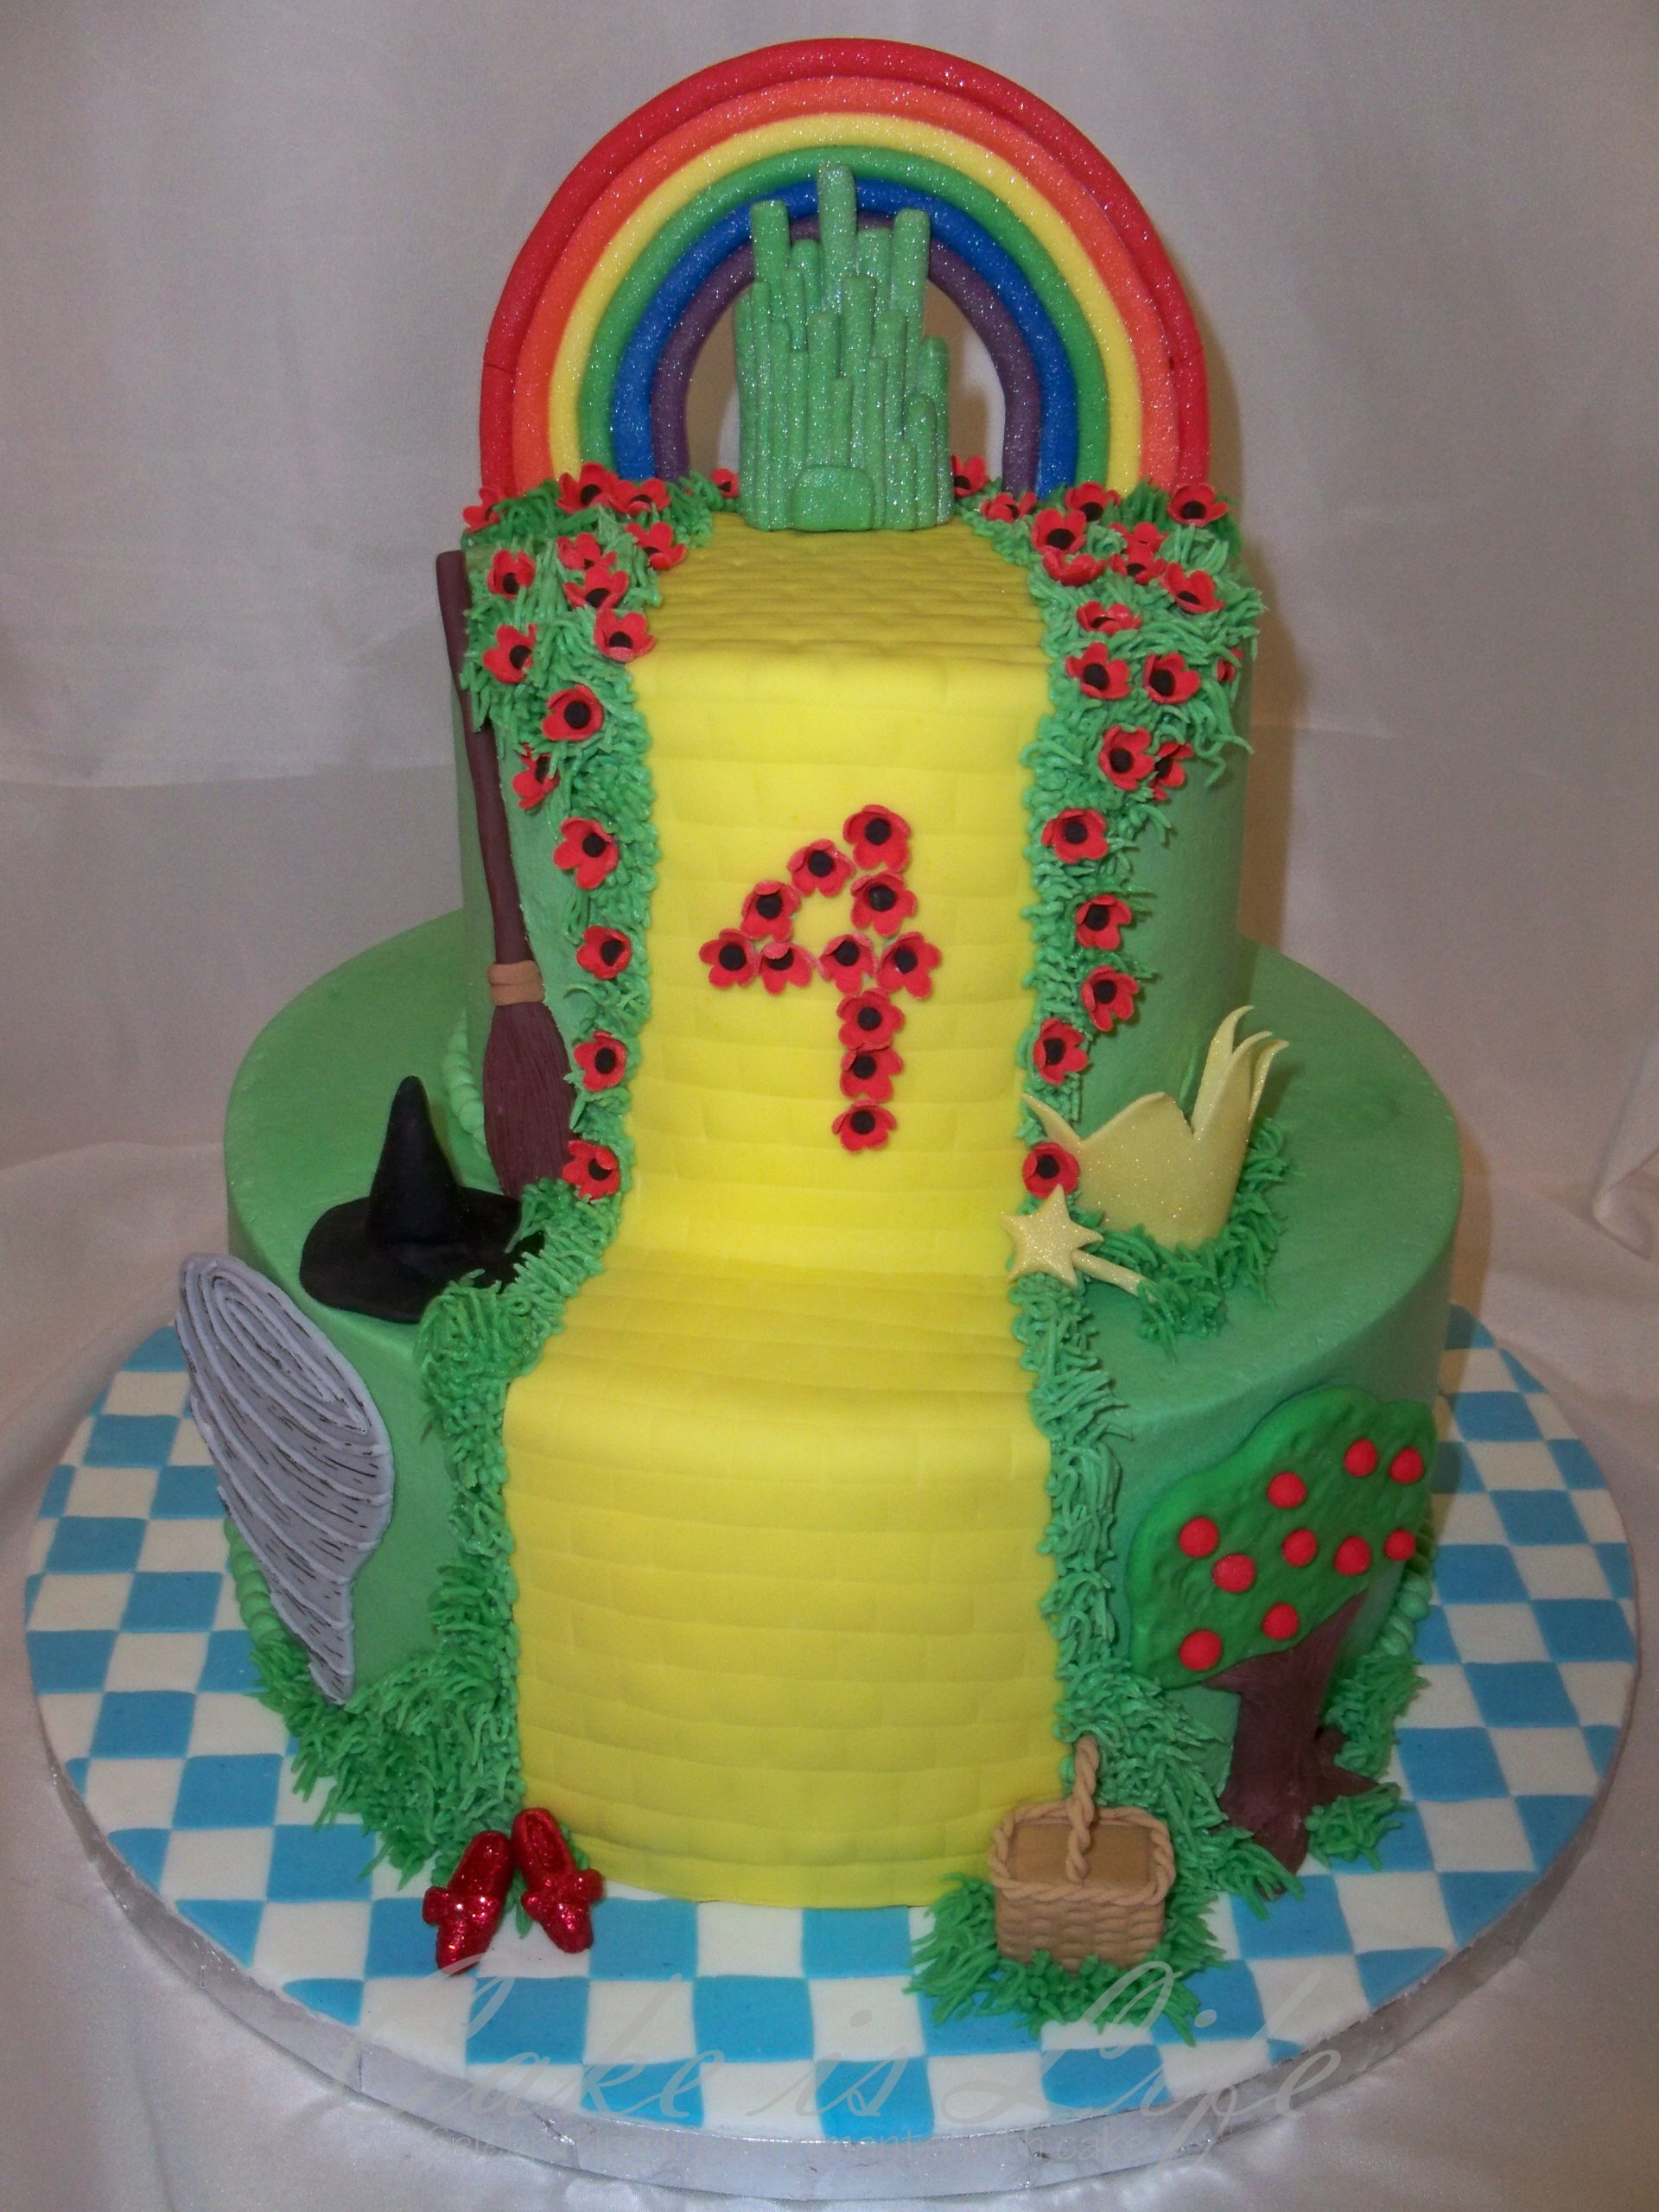 Wizard Of Oz Birthday Cake
 Wizard of Oz Birthday Cake v 1